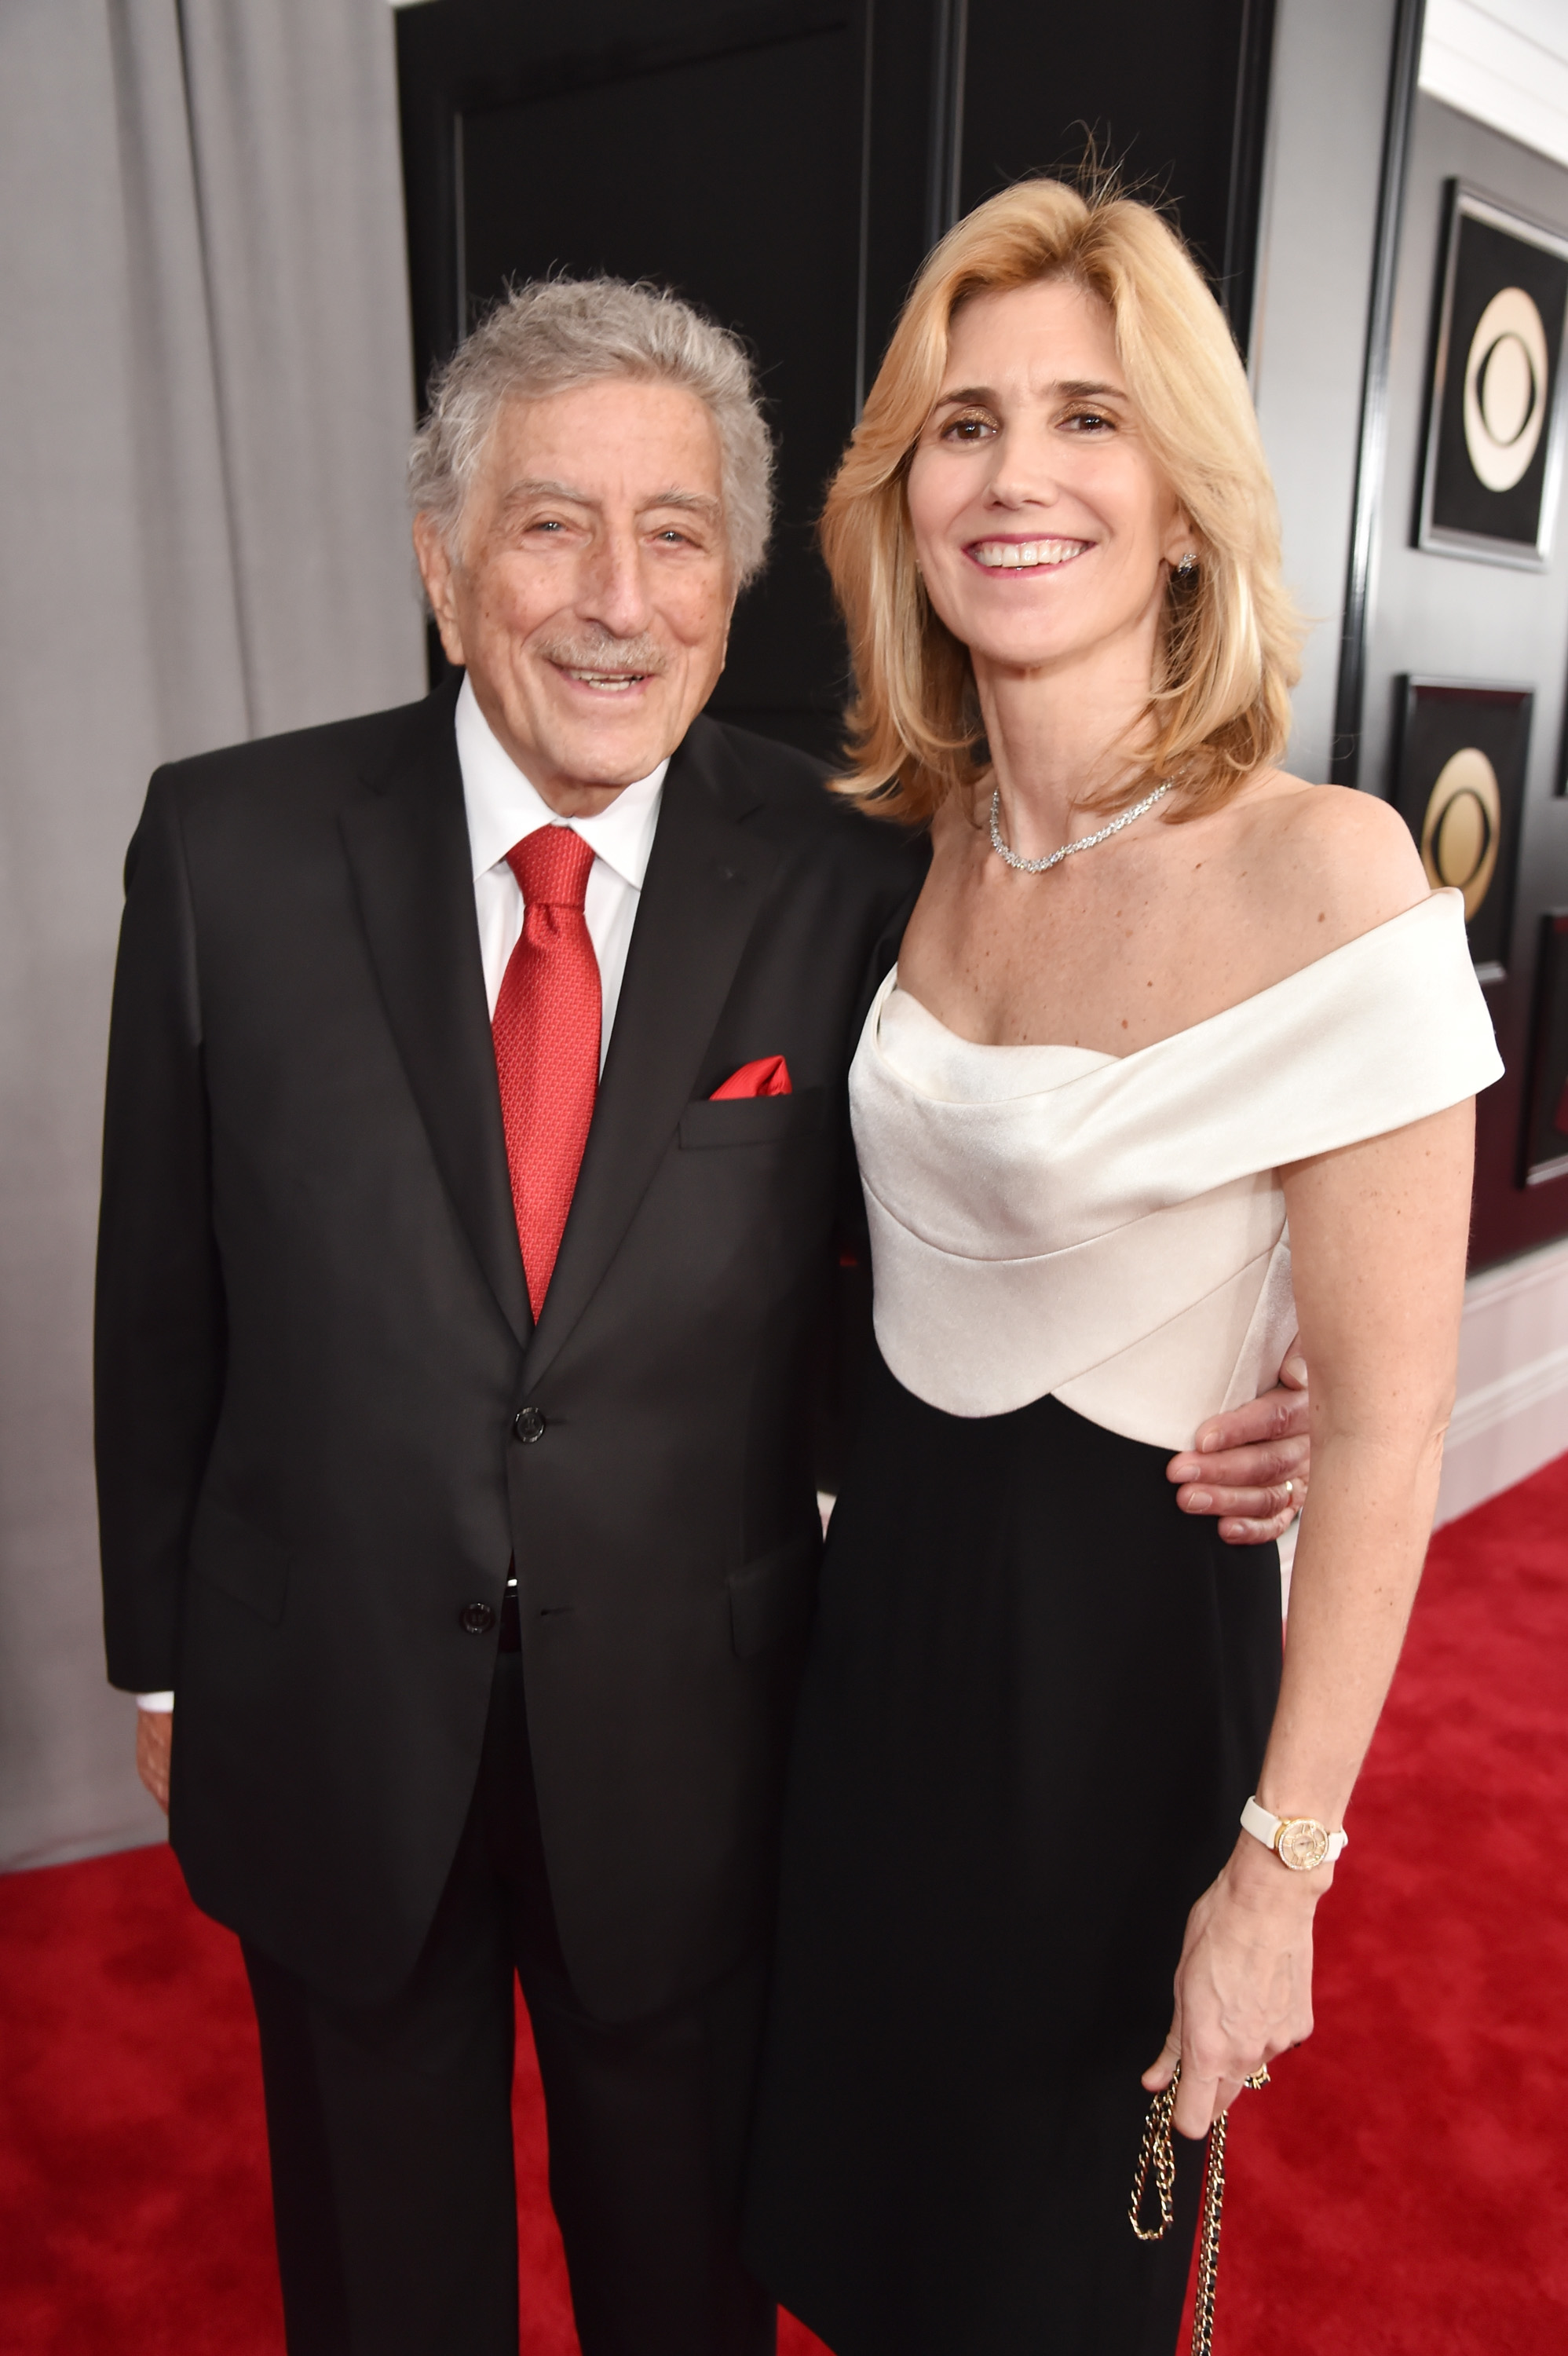 Le chanteur Tony Bennett et son épouse Susan Crow assistent à la 60e édition des Grammy Awards au Madison Square Garden le 28 janvier 2018 à New York. | Source : Getty Images